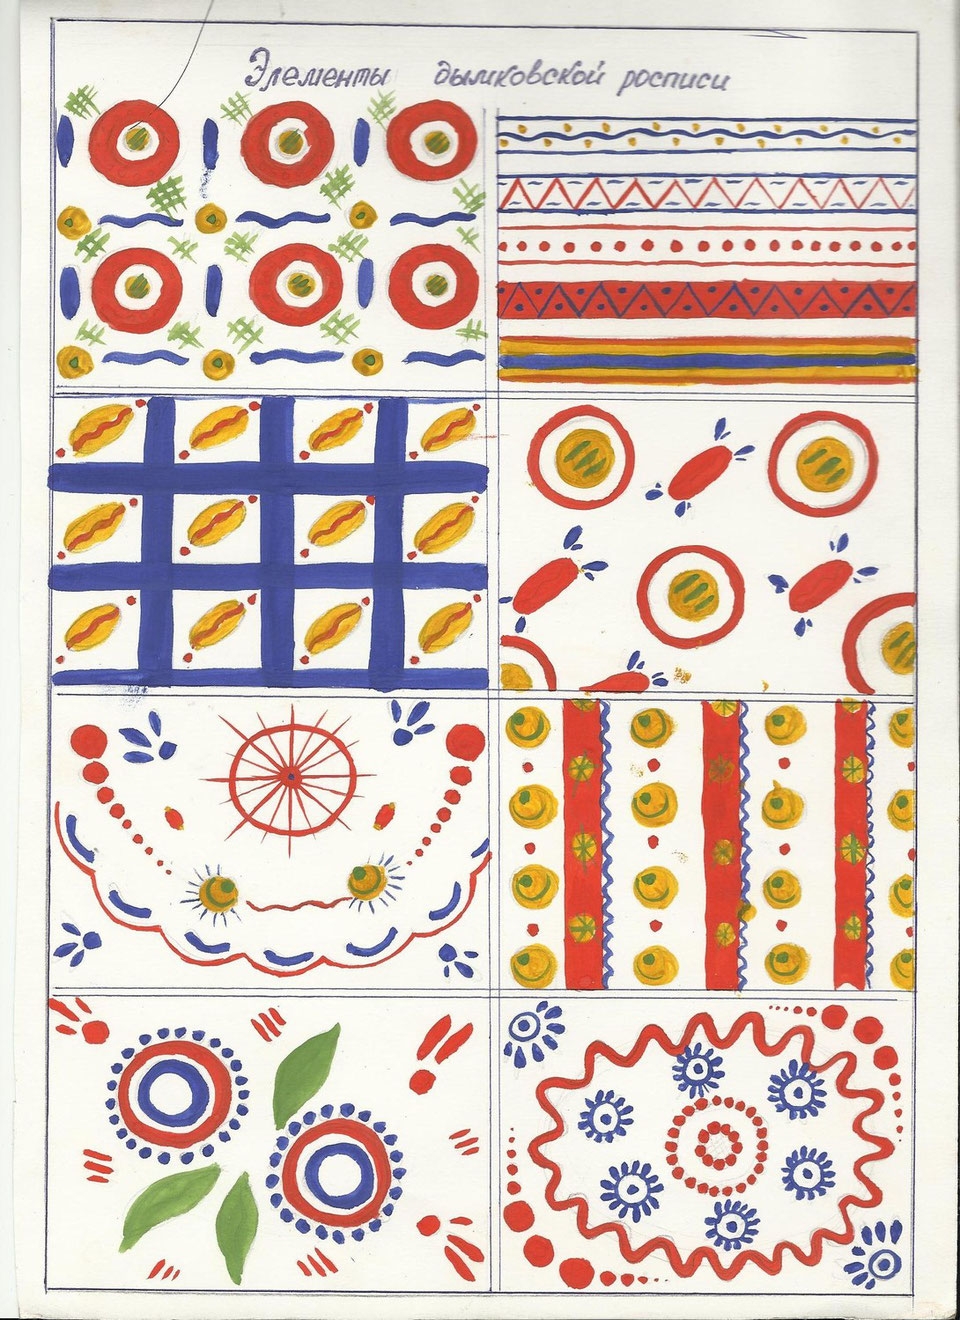 Роспись дымковской игрушки - указания для росписи (техника, цвета, узоры, примеры)